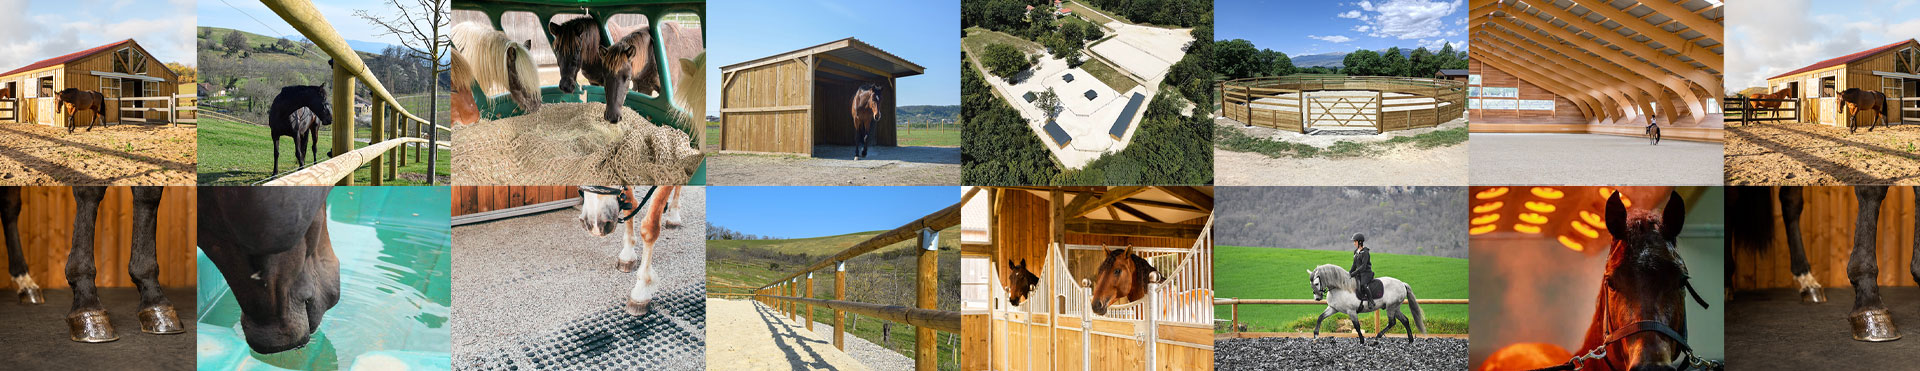 gamme horse stop équipements infrastructures pour chevaux